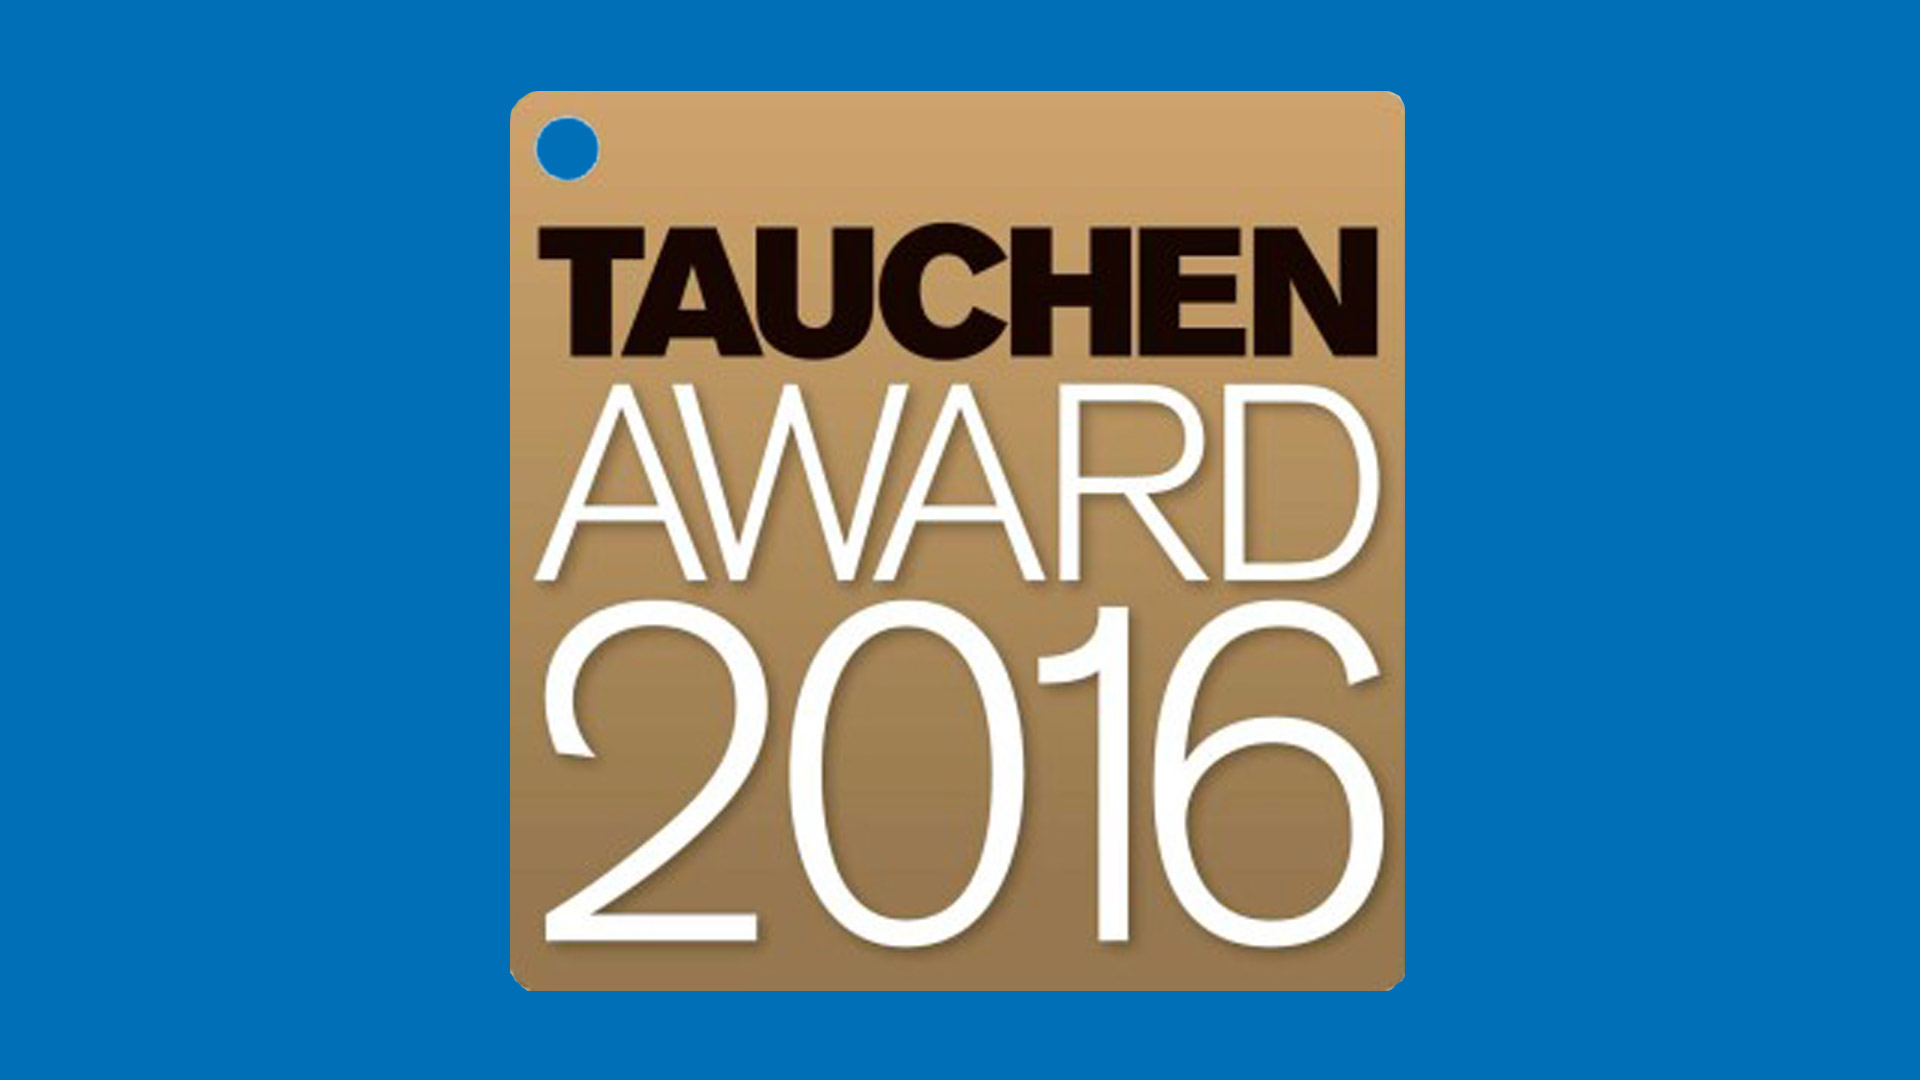 Tauchen Award 2016